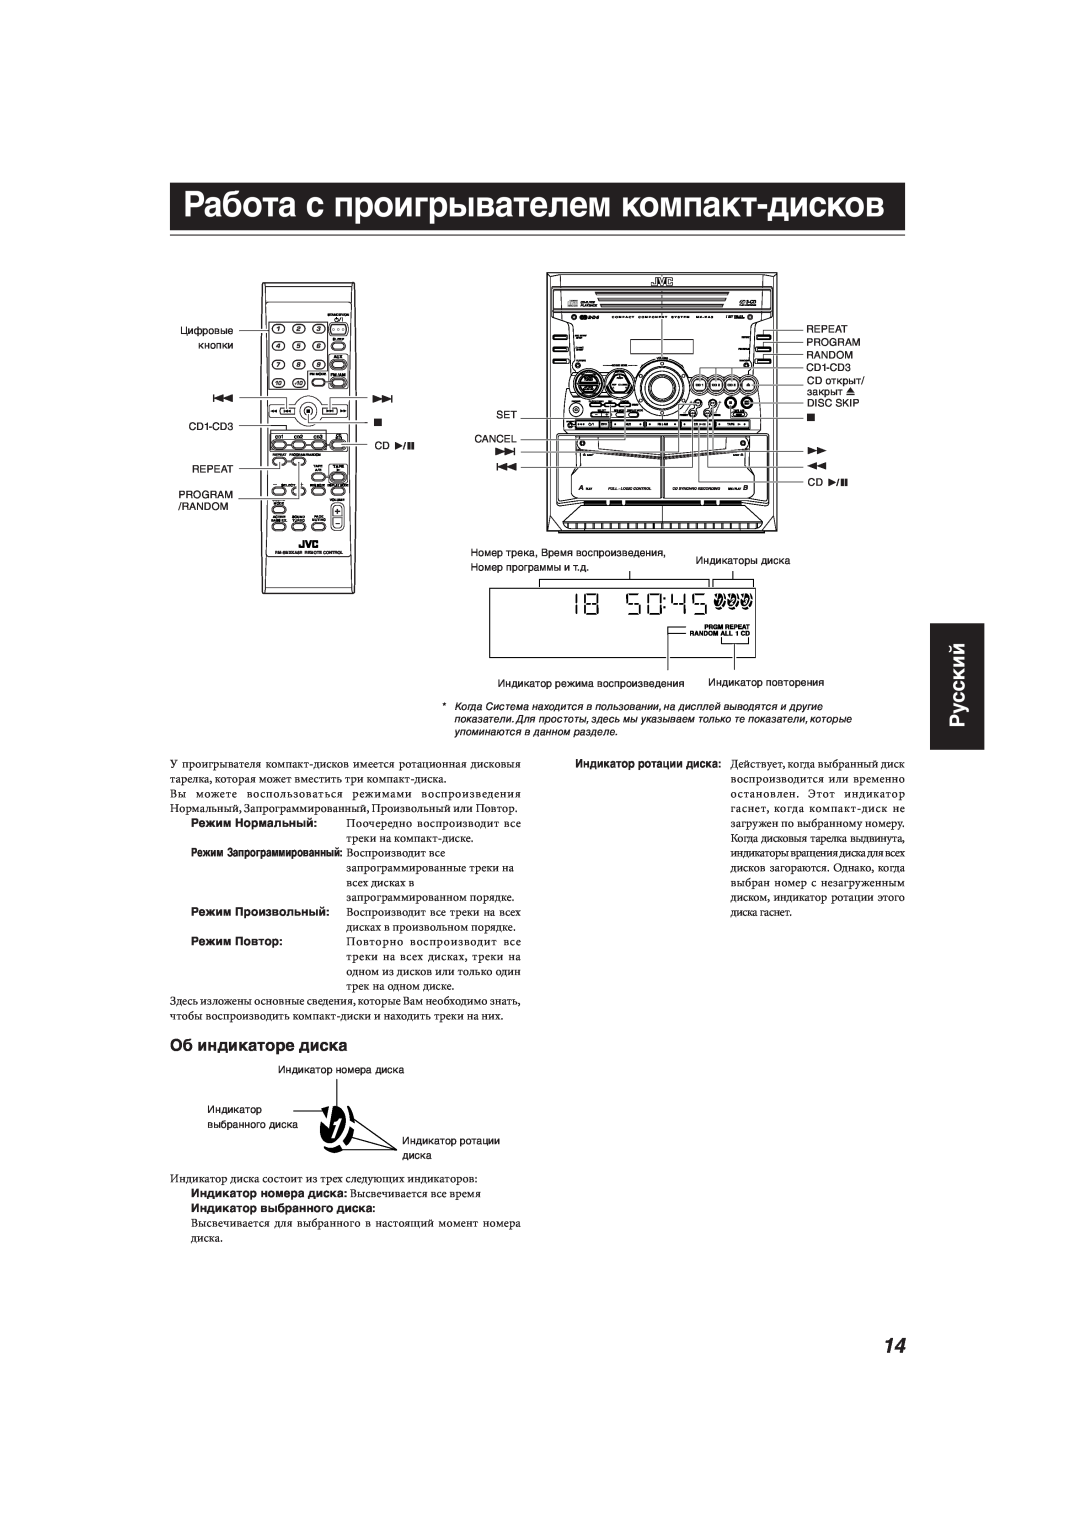 JVC MX-KA33 manual Работа с проигрывателем компакт-дисков, Русский, Об индикаторе диска 